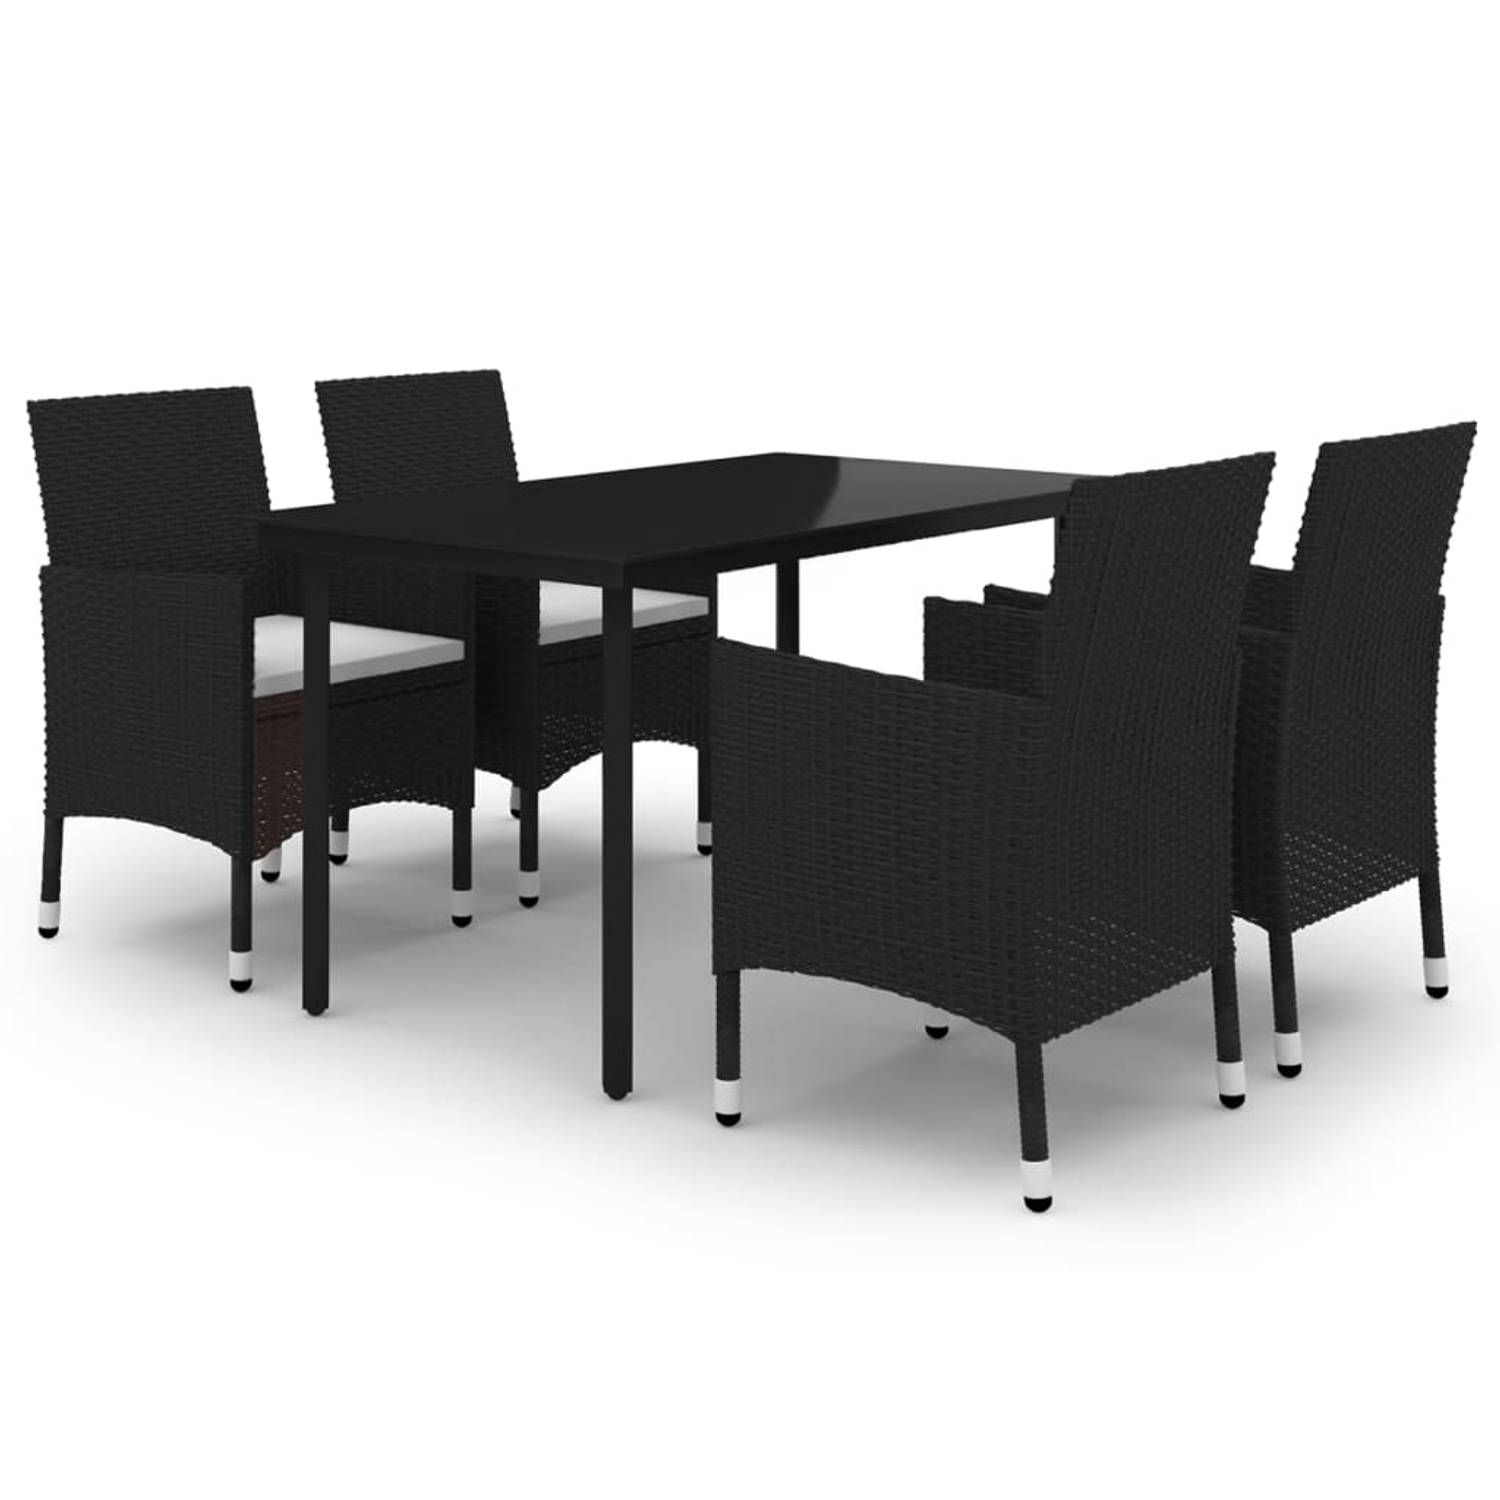 The Living Store Eethoek - PE-rattan - 140x70x74 cm - zwart/cremewit - inclusief 4 stoelen en zitkussens